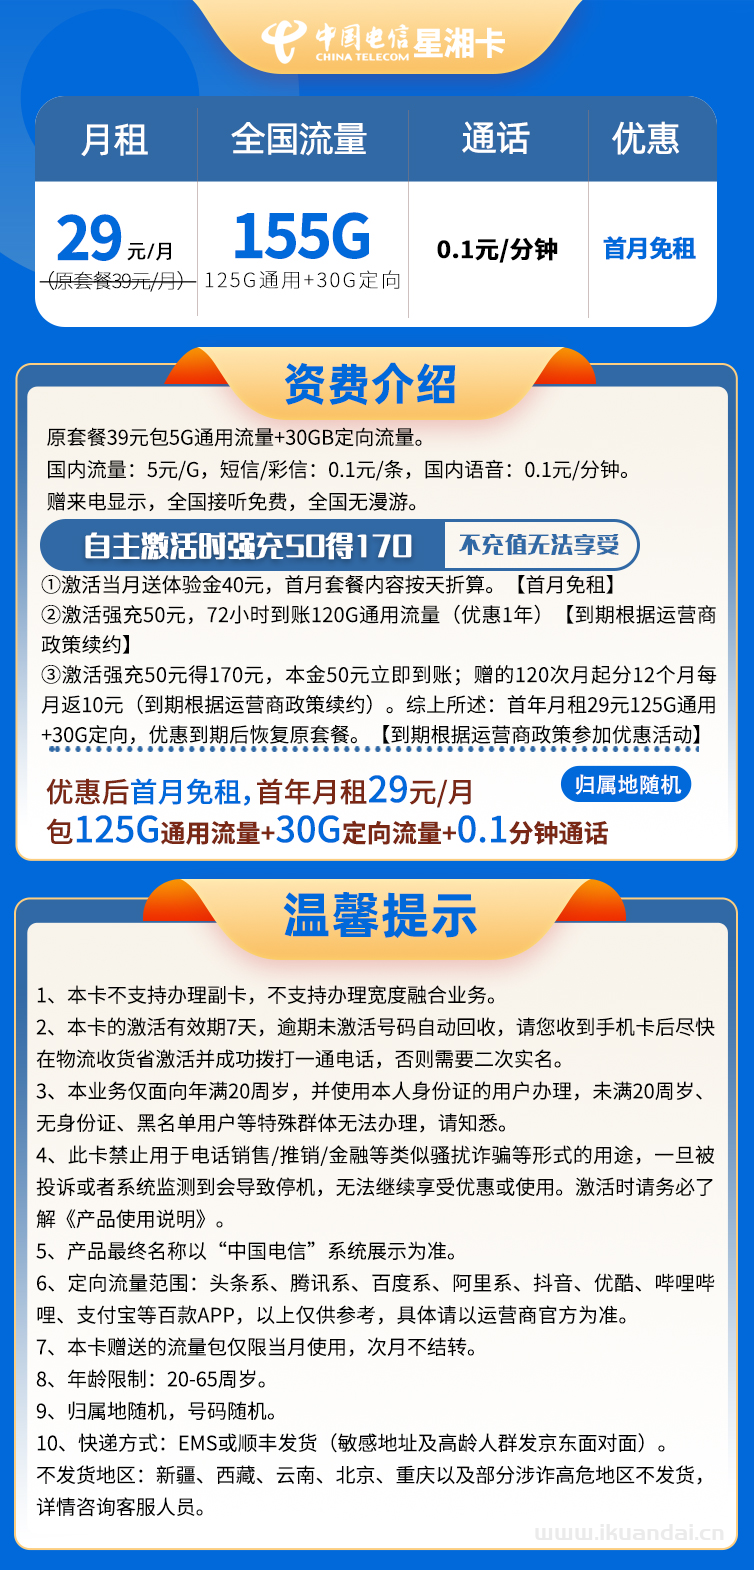 湖南电信-星湘卡29元125G通用+30G定向+0.1分钟通话插图2